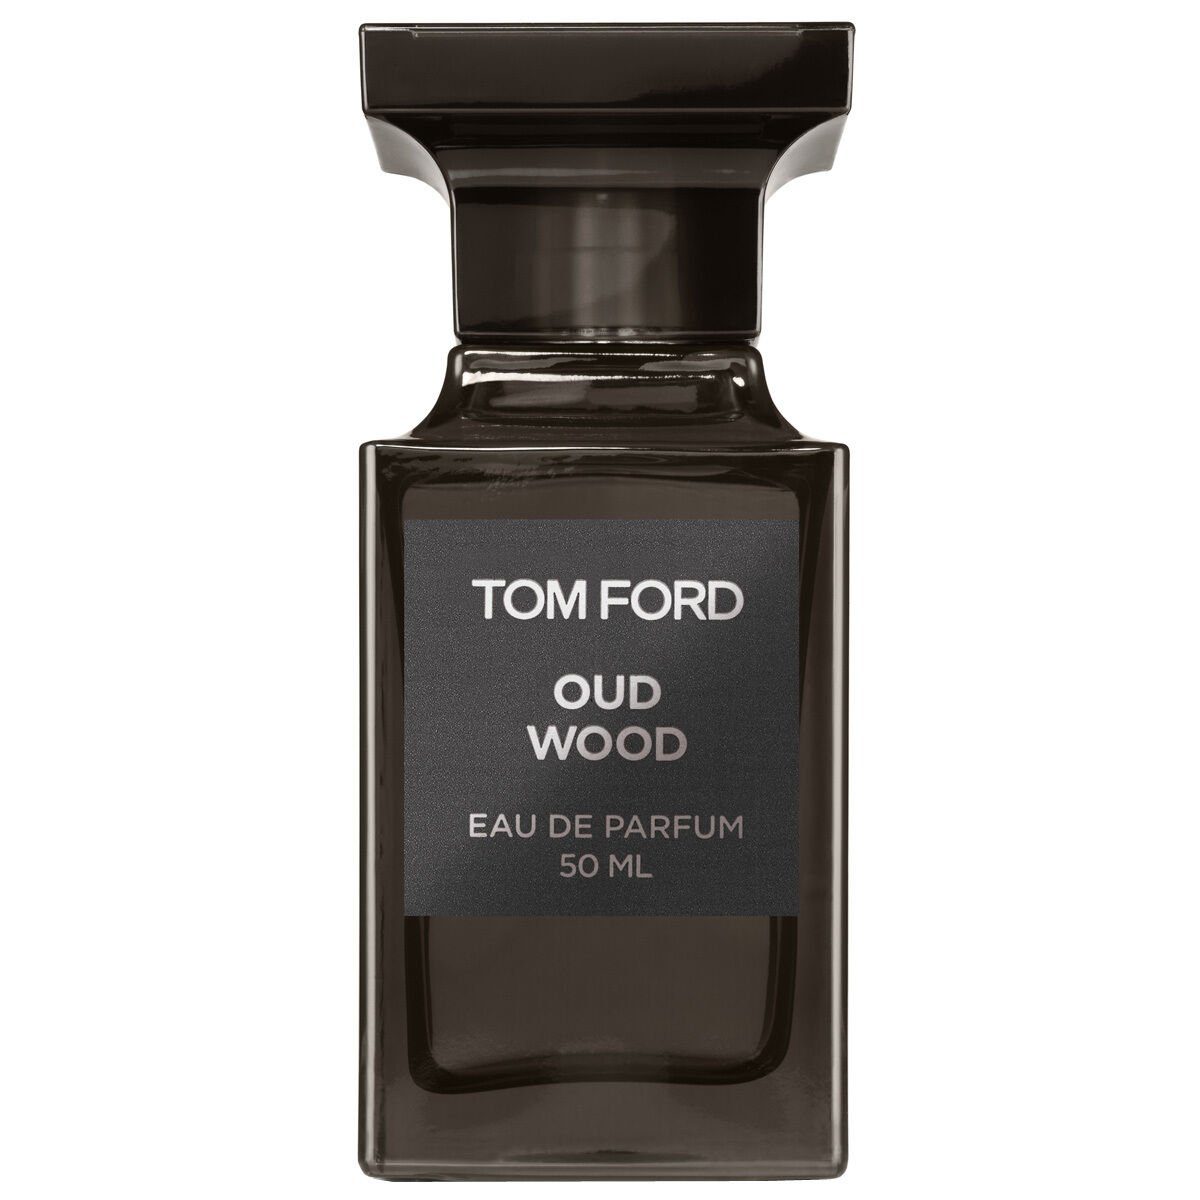 Oud de Eau Wood Tom Ford Parfum